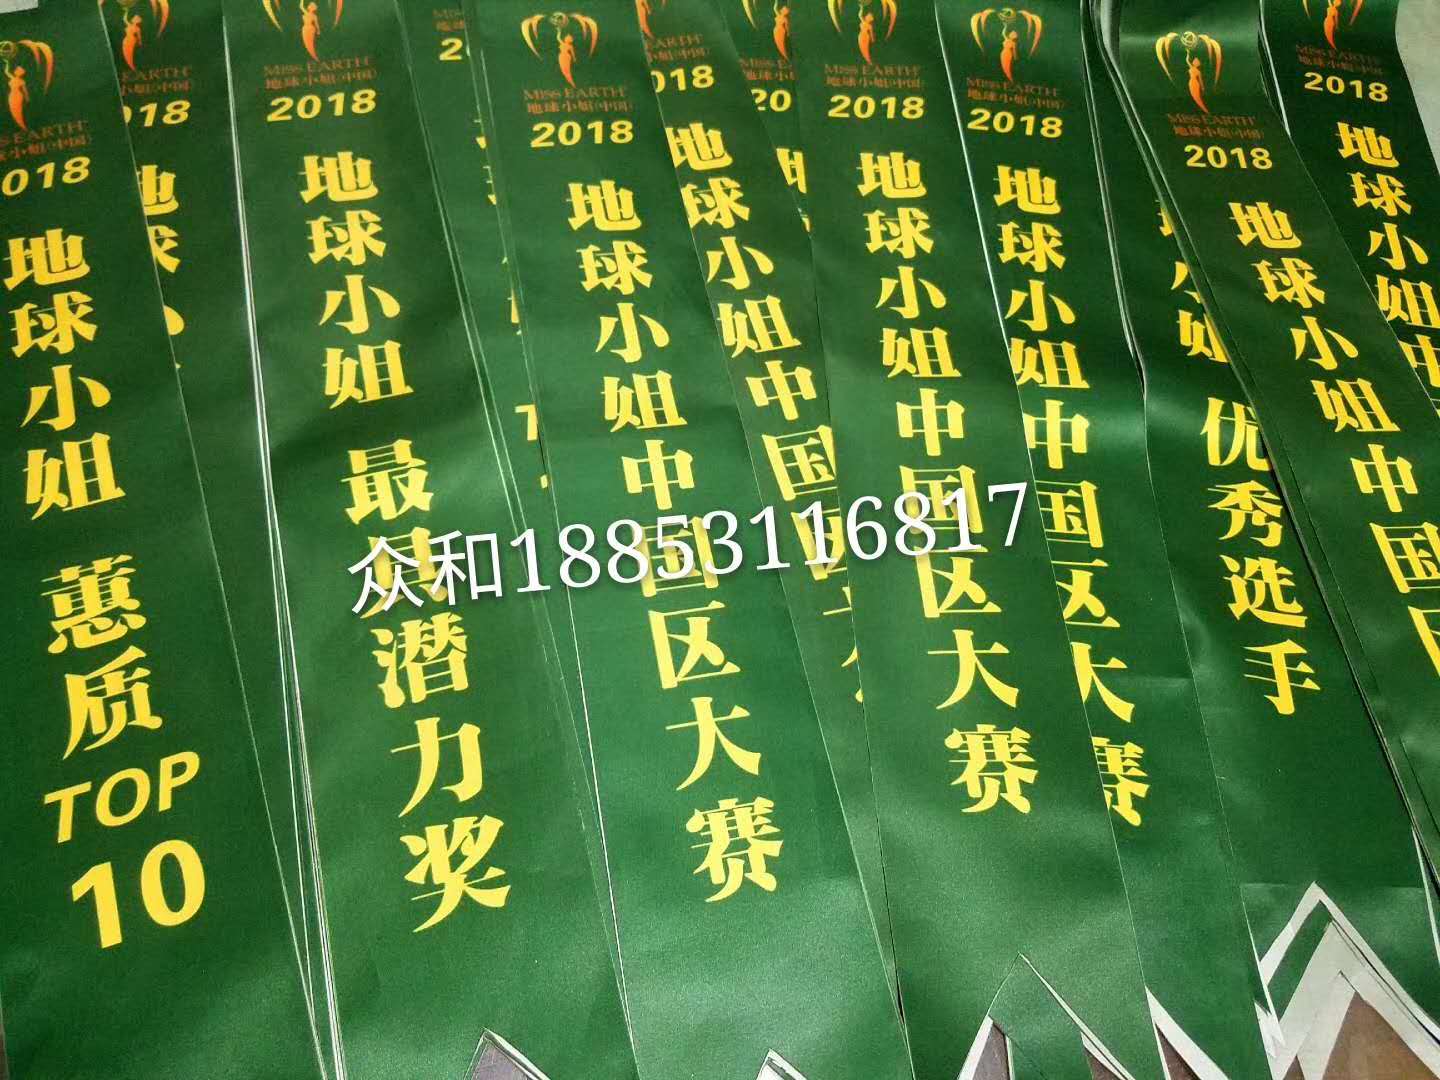 高档旗帜布料案例“2018地球小姐中国区大赛”(图1)